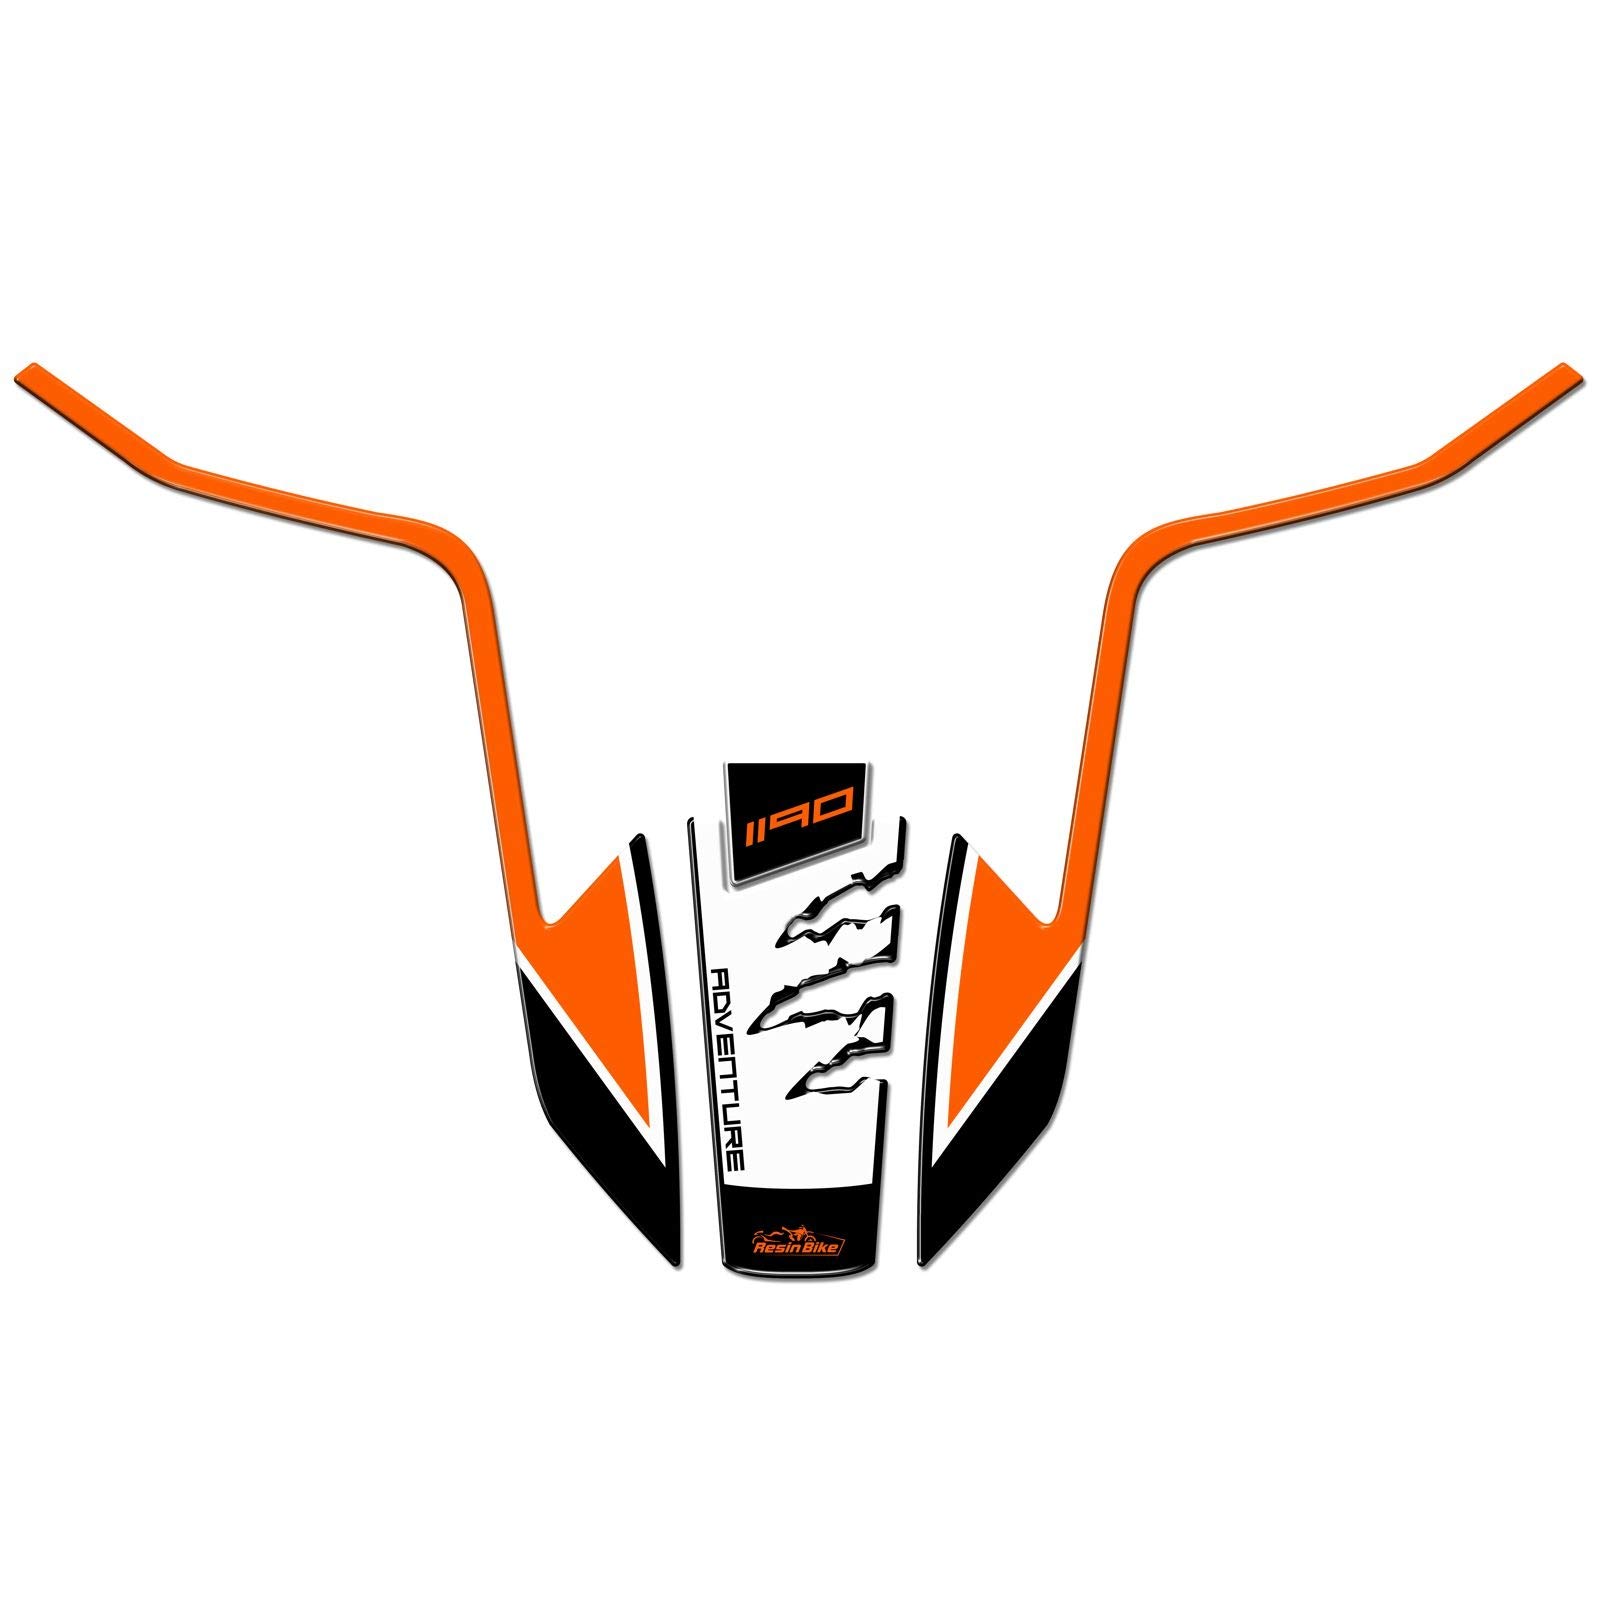 Resin Bike Aufkleber für Motorrad Kompatibel mit KTM 1190 Adventure S 2013-2016. Kotflügelschutz vor Stößen und Kratzern. 3D-Harzklebstoff - Stickers - Made in Italy von Resin Bike